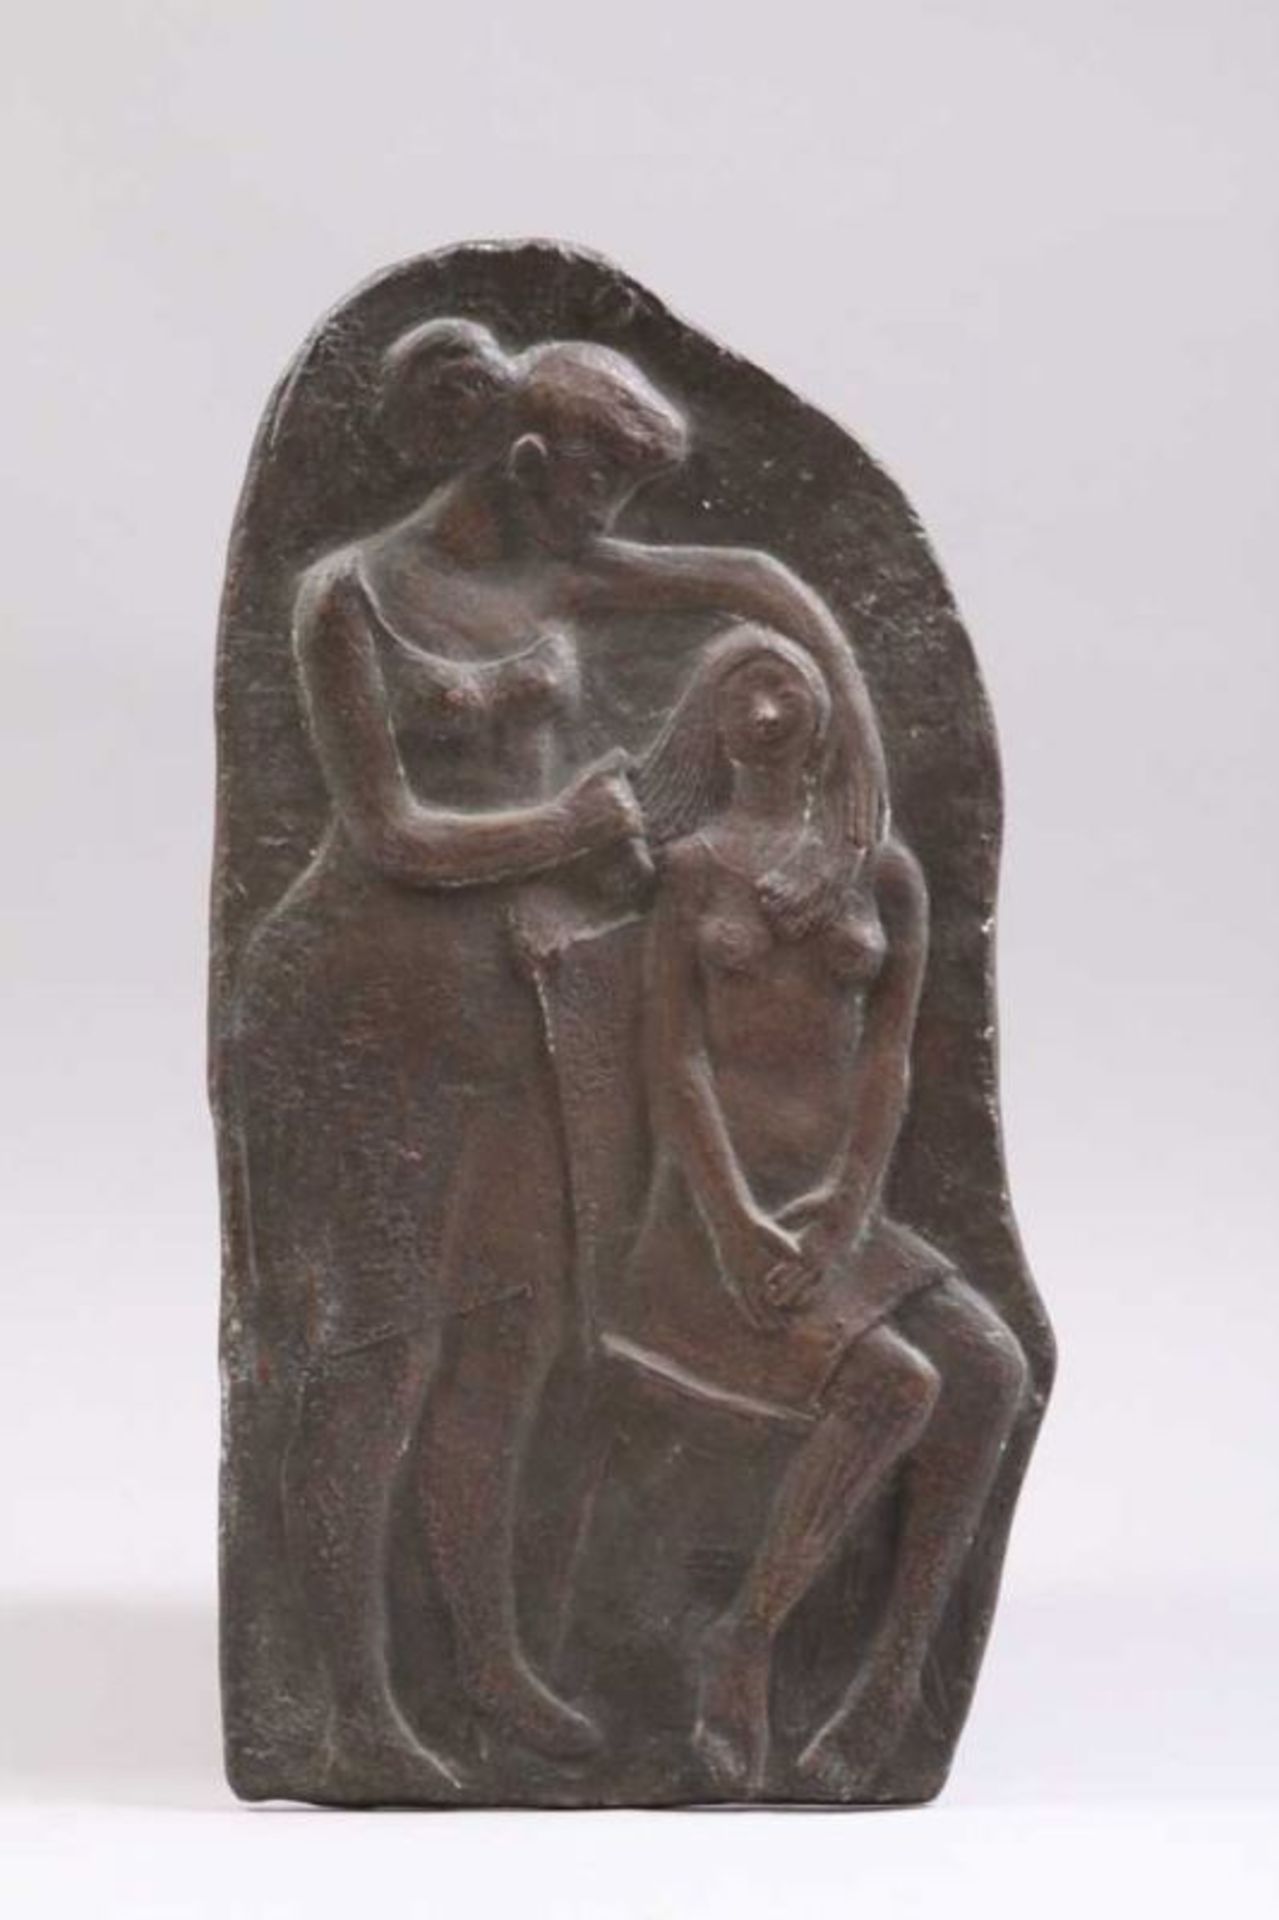 Bronzerelief.Deutsch, 20. Jh. "Mutter mit Kind" Patina. H: 59 cm. 20.00 % buyer's premium on the